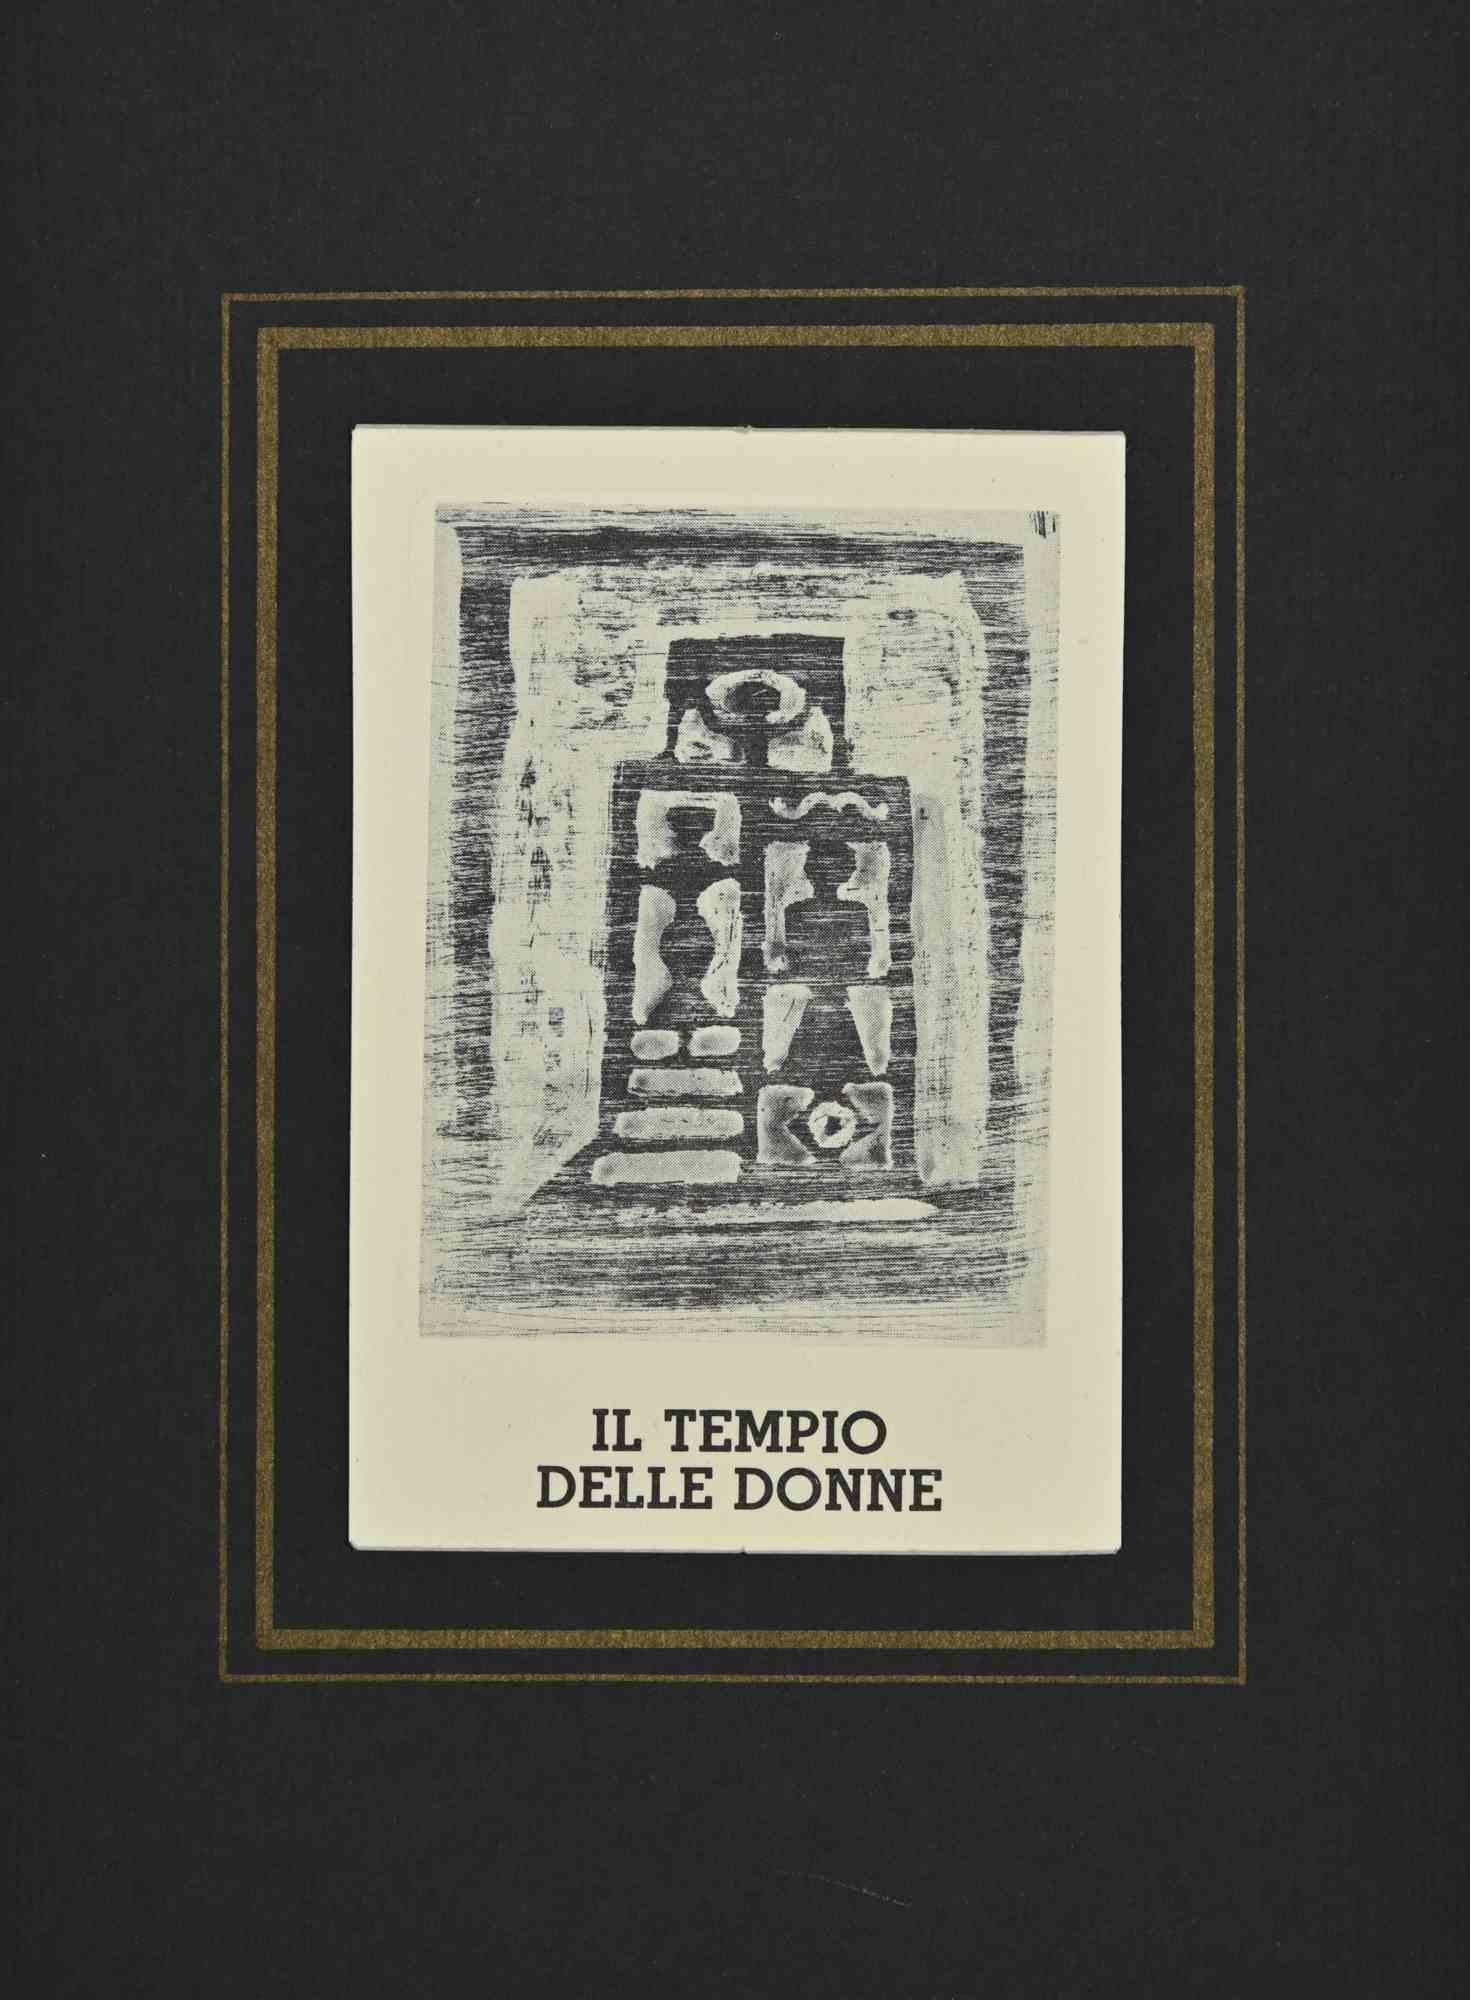 Le Temple des femmes est une estampe réalisée par Massimo Campigli dans les années 1970/1971.

Gravure sur papier.

Cette œuvre fait partie d'une série de travaux créés dans la dernière période de l'artiste et imprimés au tournant de l'année de sa